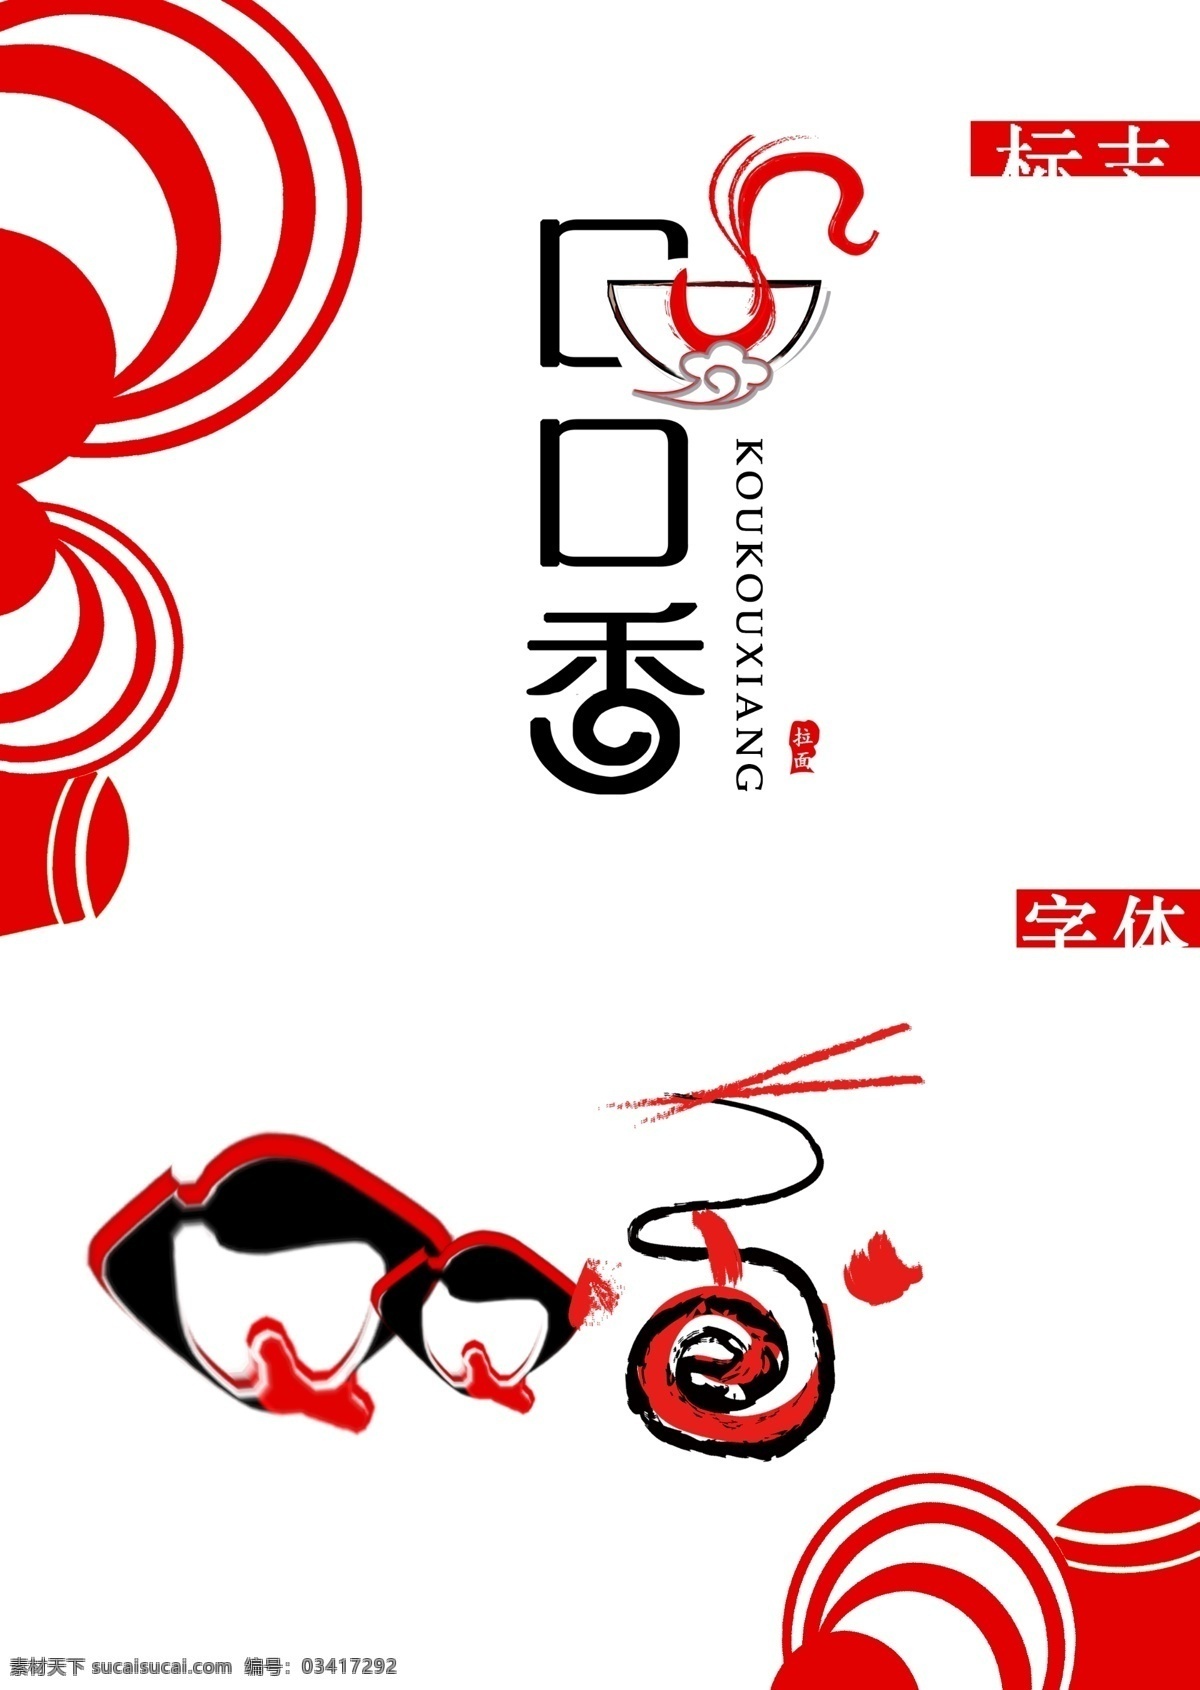 面店logo logo 标志 面店 红色 口口香 字体设计 字体 logo设计